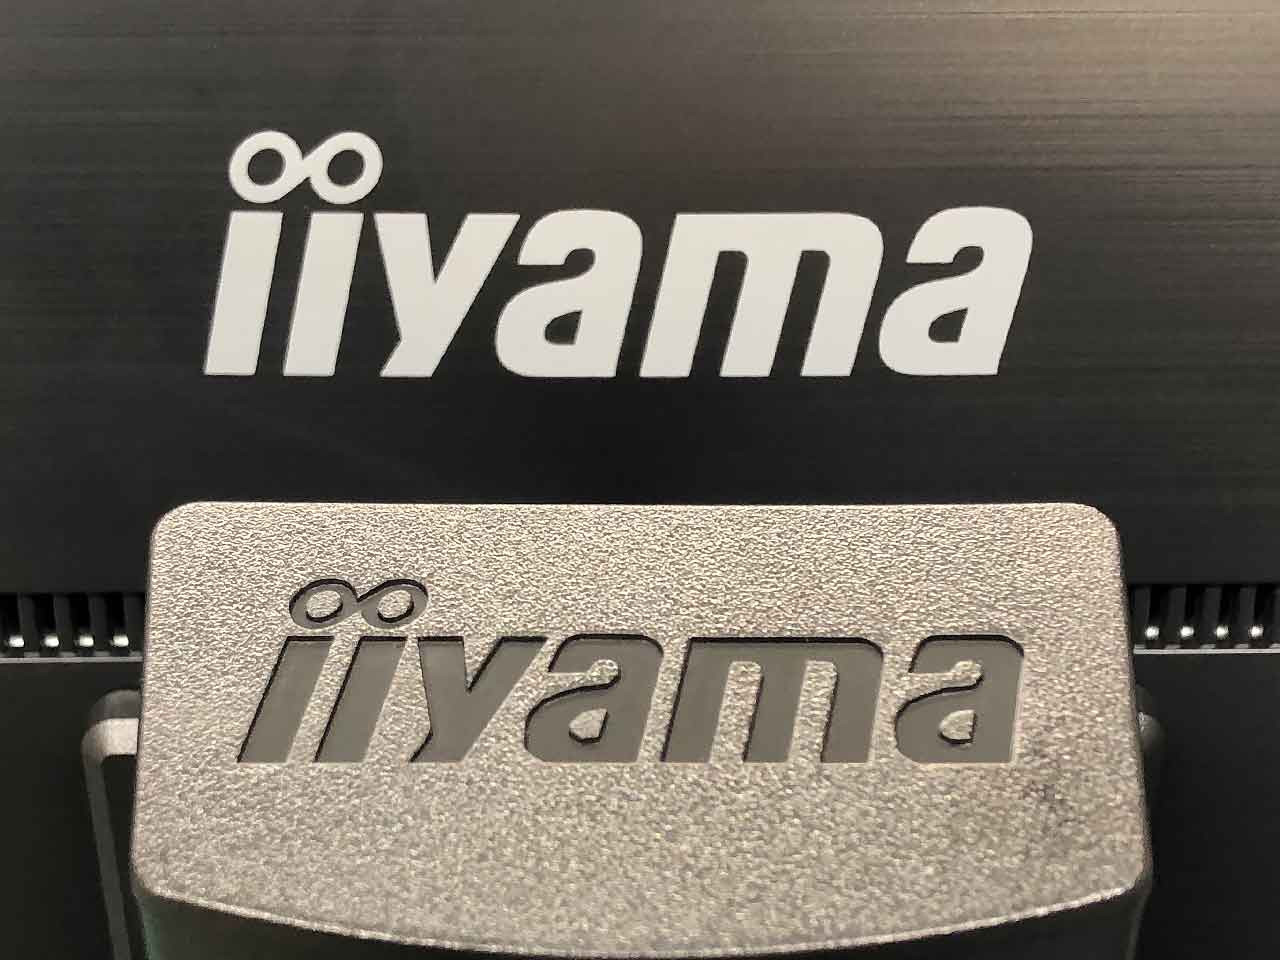 「iiyama」は老舗ブランド